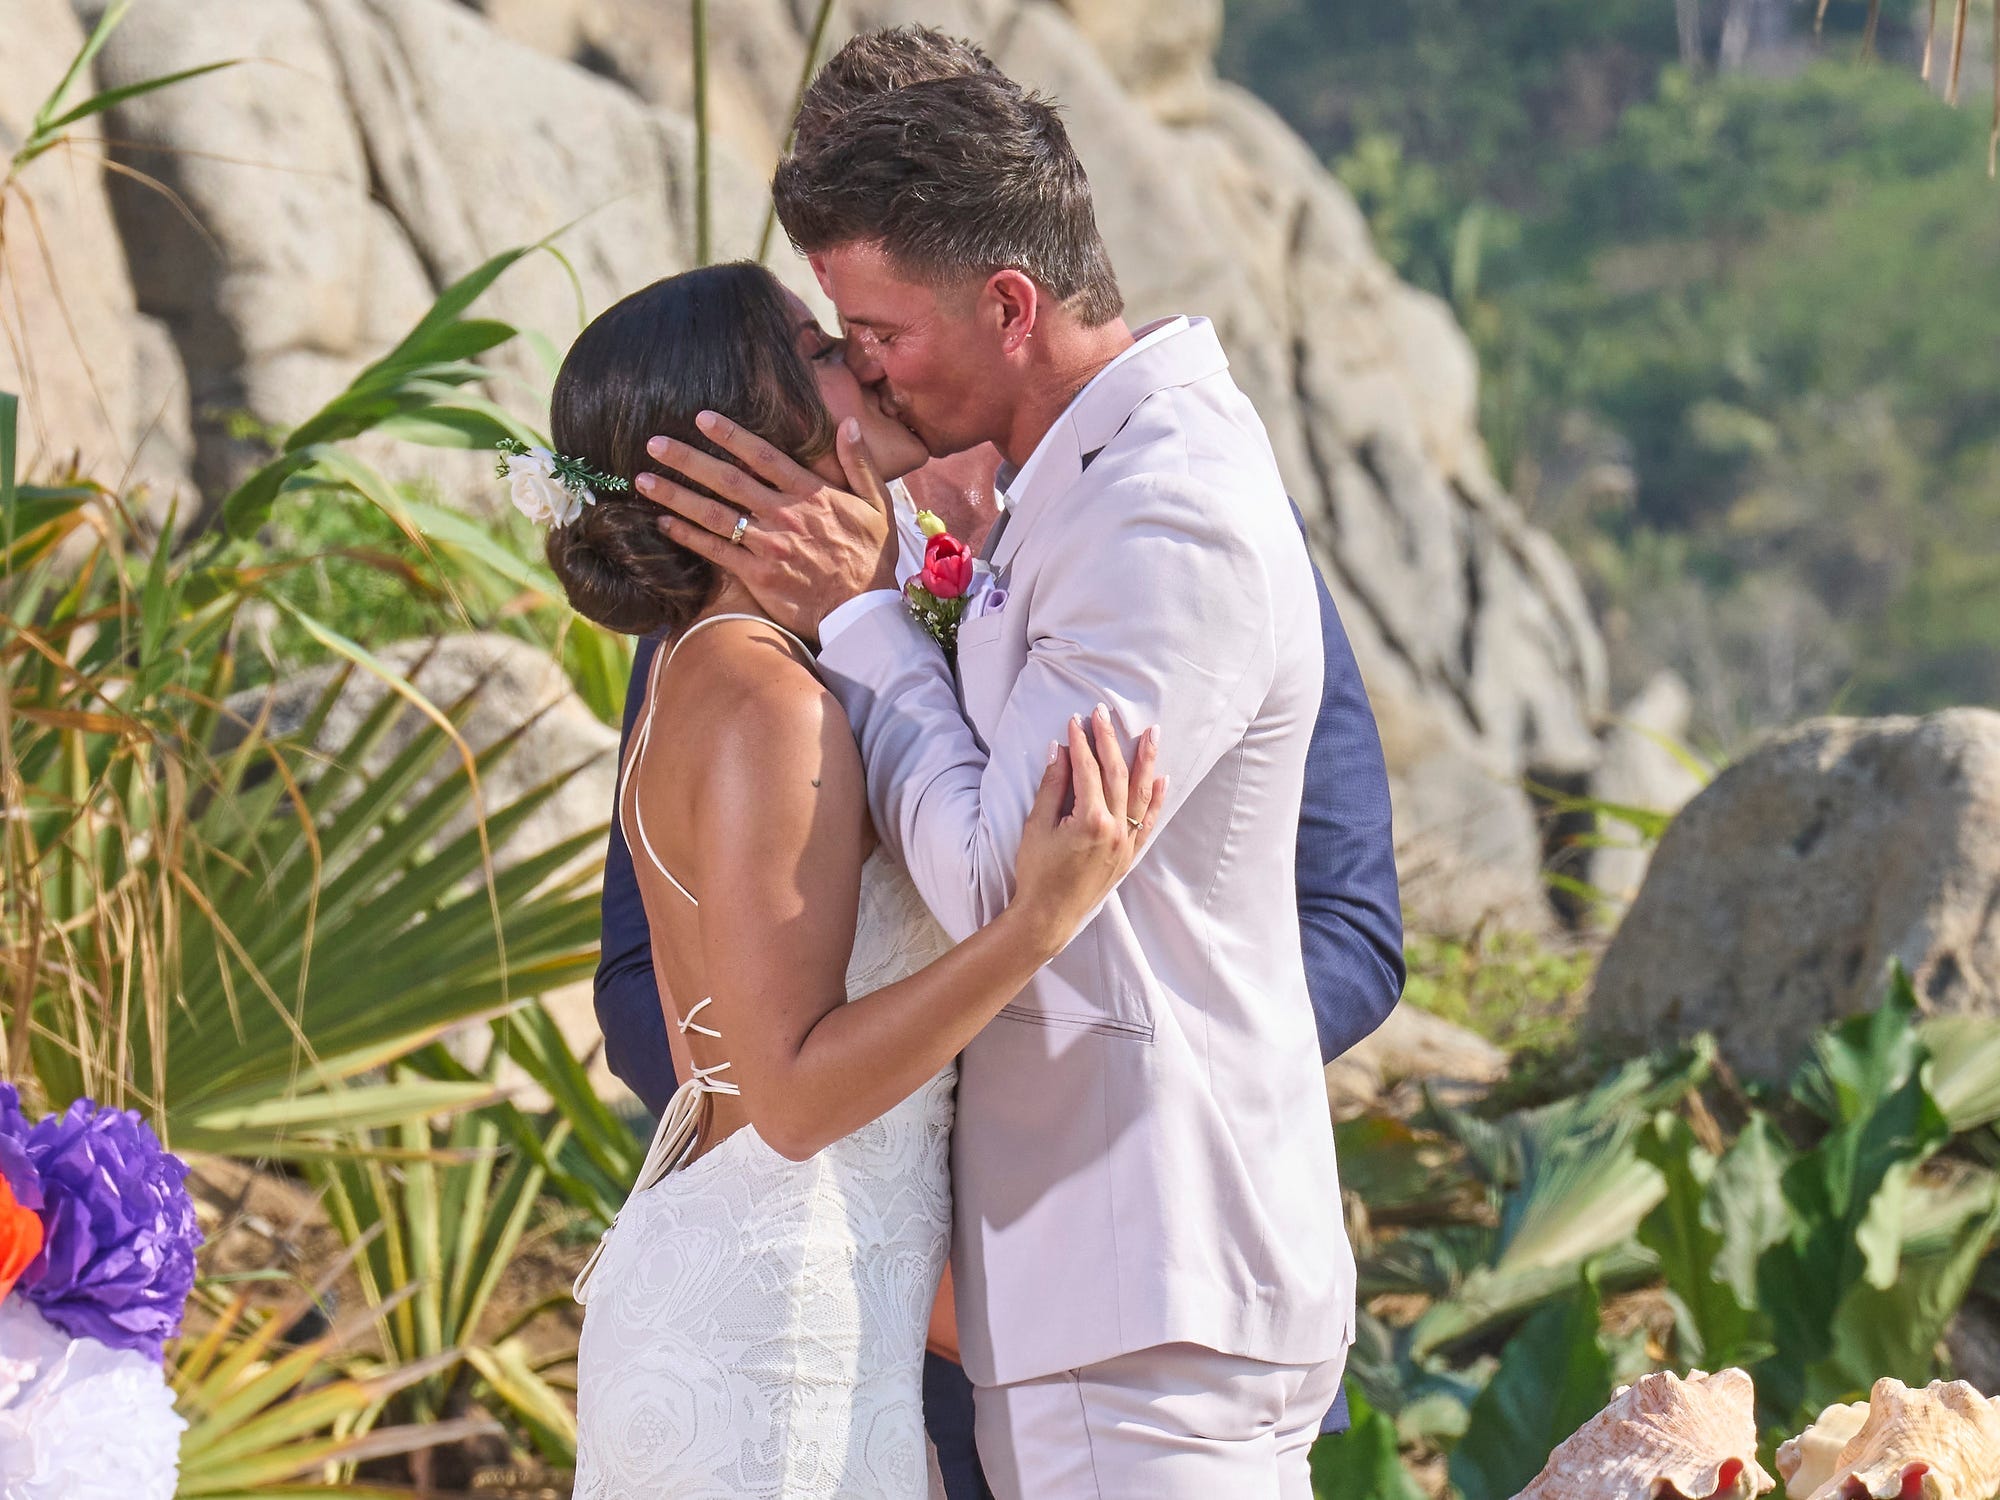 Mari Pepin, in einem weißen rückenfreien Hochzeitskleid, küsst Kenny Braasch, in einem weißen Anzug, während ihrer Hochzeitszeremonie in Staffel 9 von „Bachelor in Paradise“.